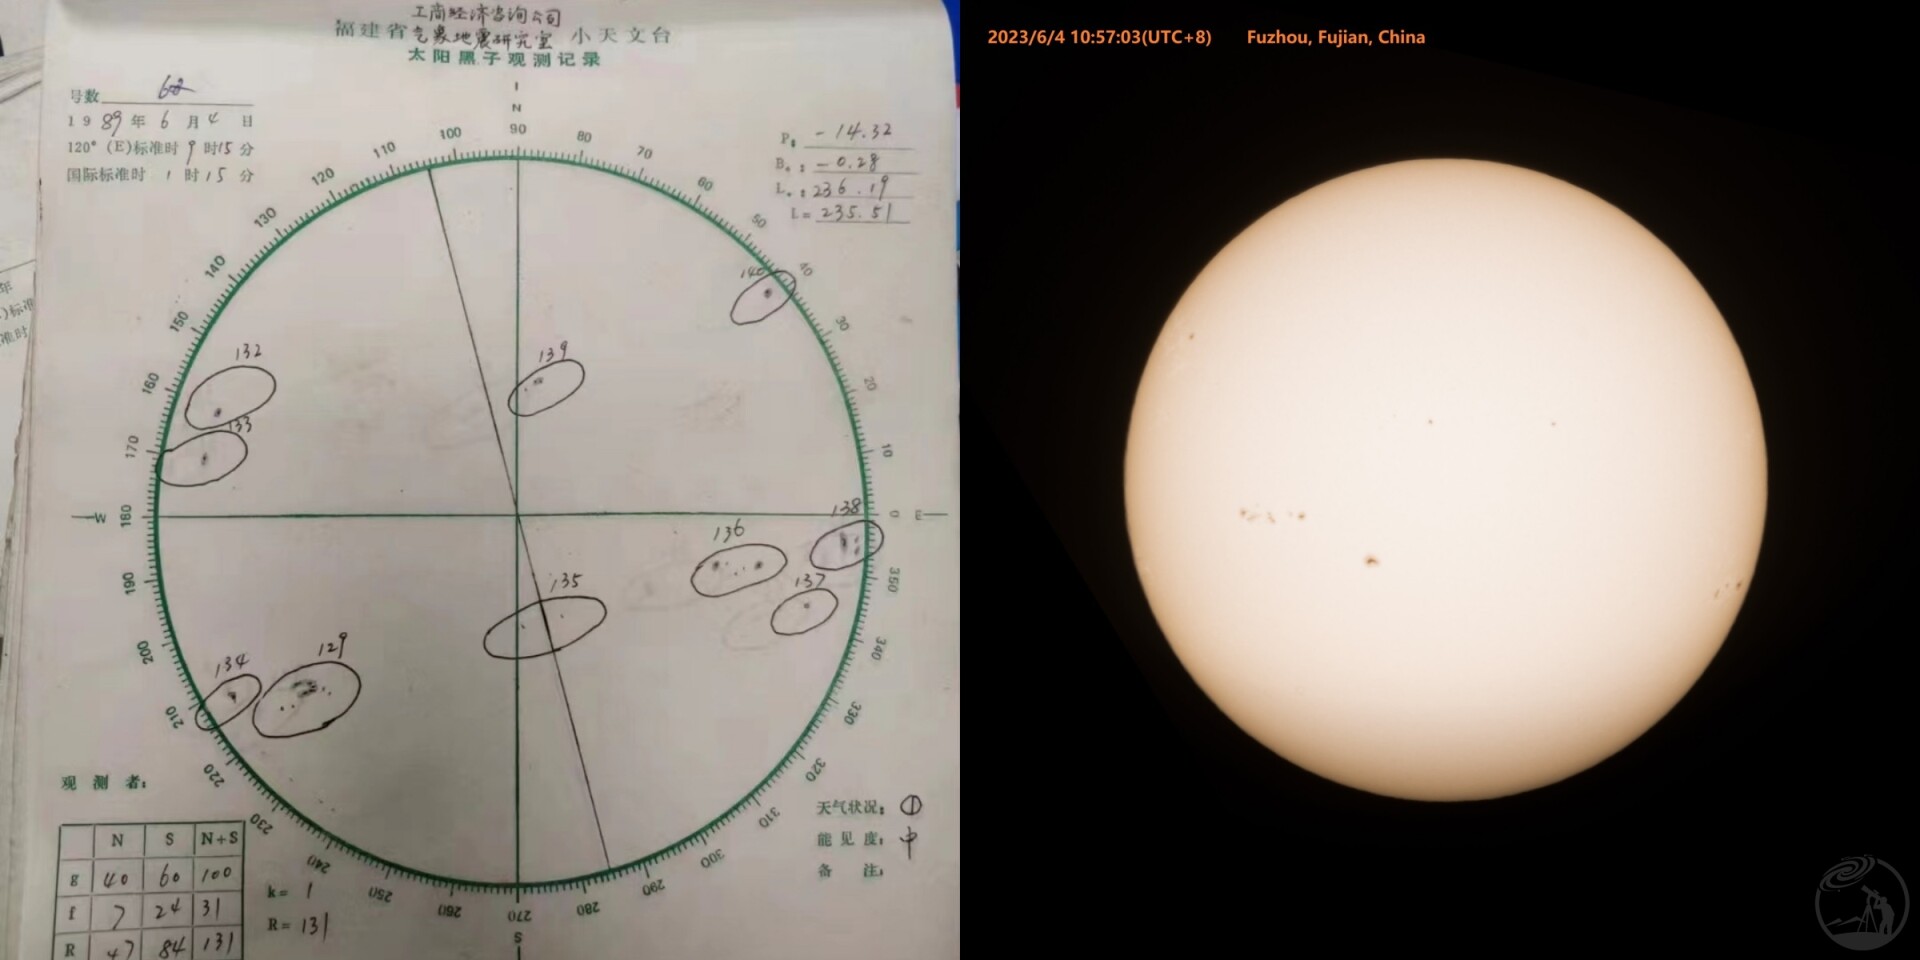 二十四周年的太阳黑子观测记录